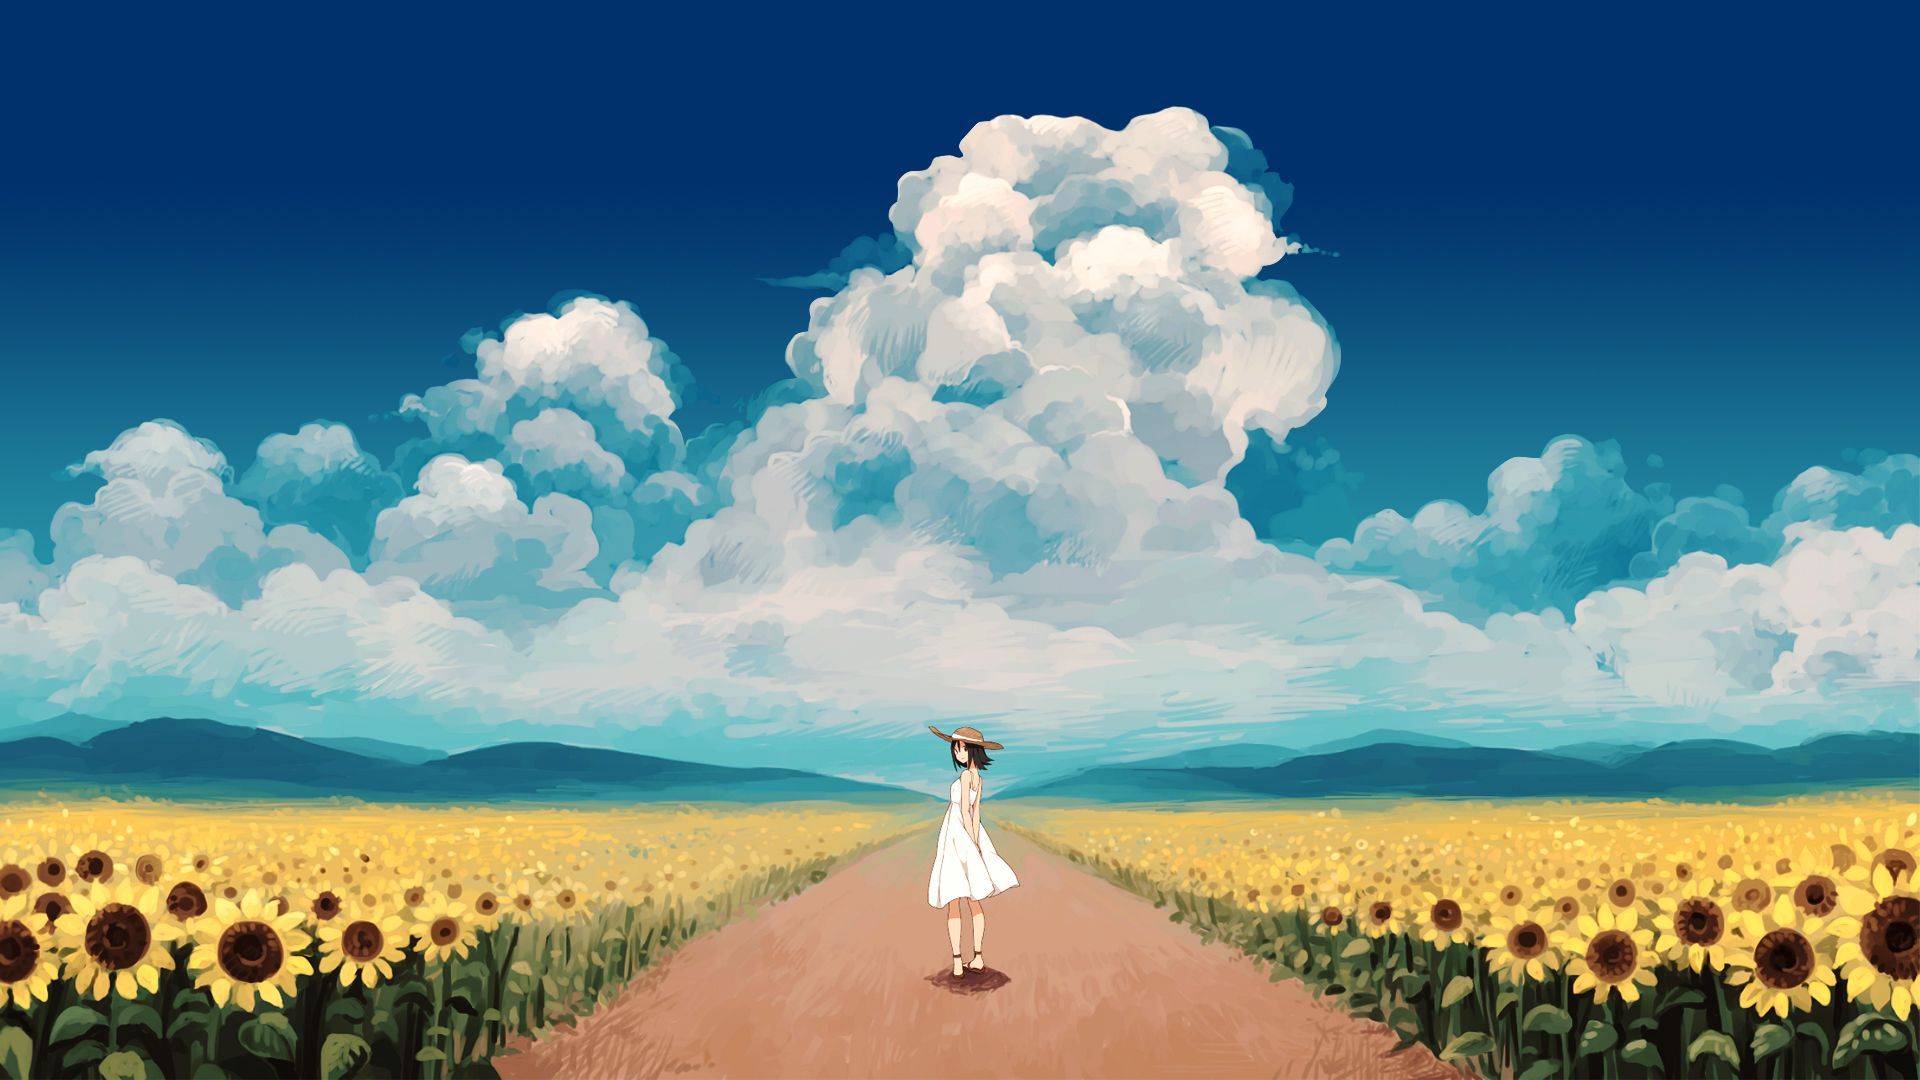 Anime Sunflower Wallpaper Free Anime Sunflower Background